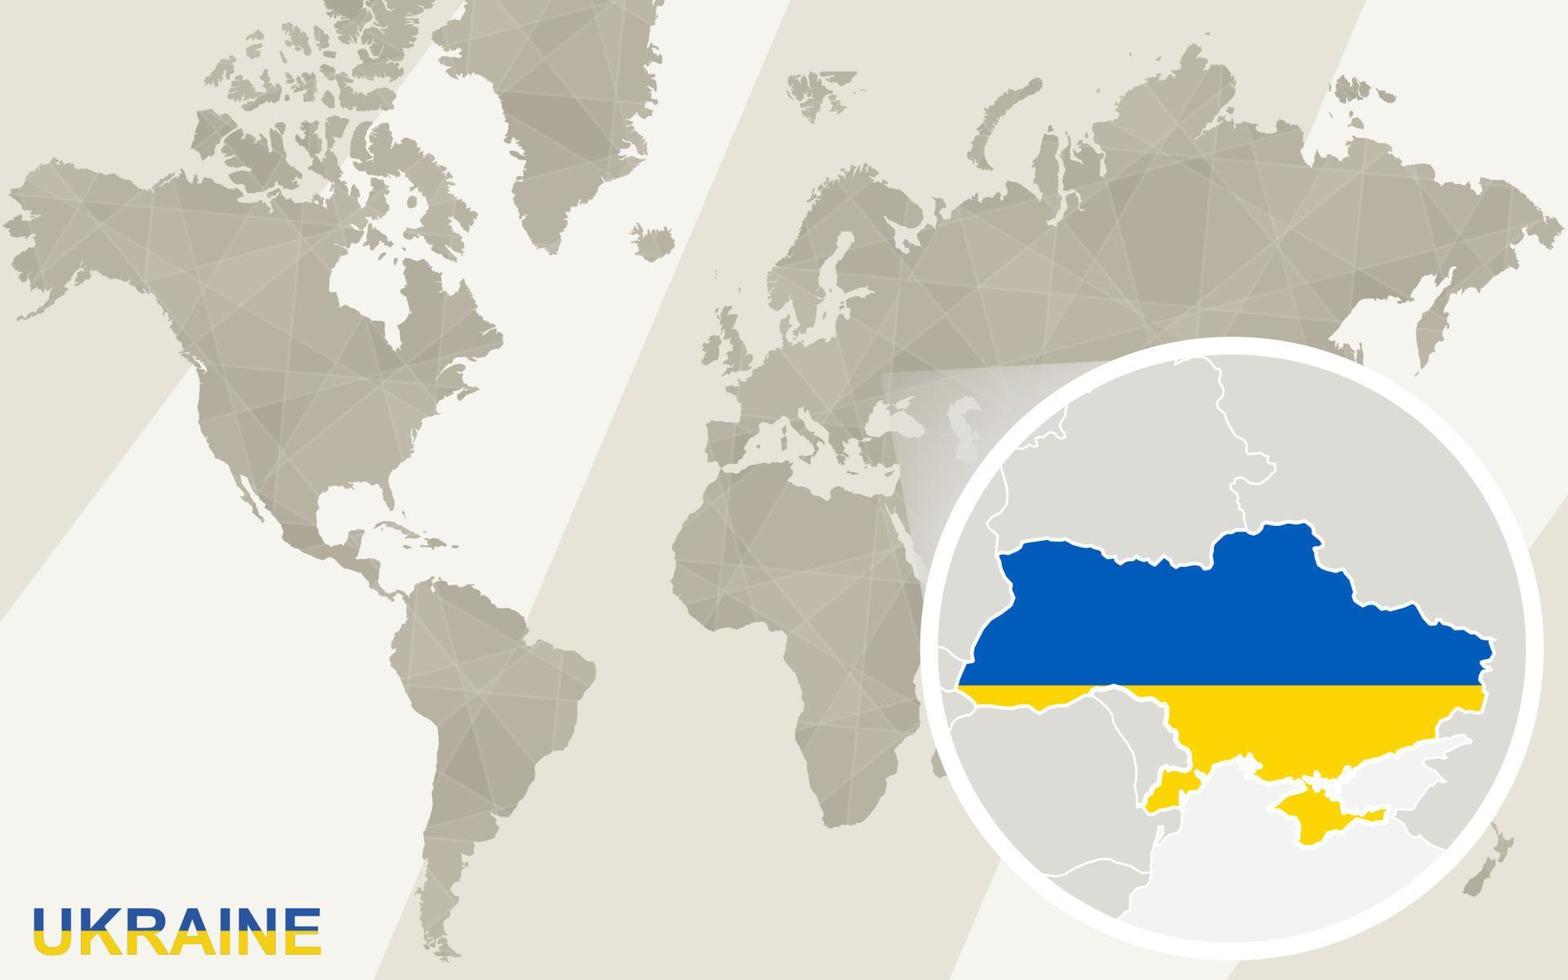 Zoom en el mapa y la bandera de Ucrania. mapa del mundo. vector